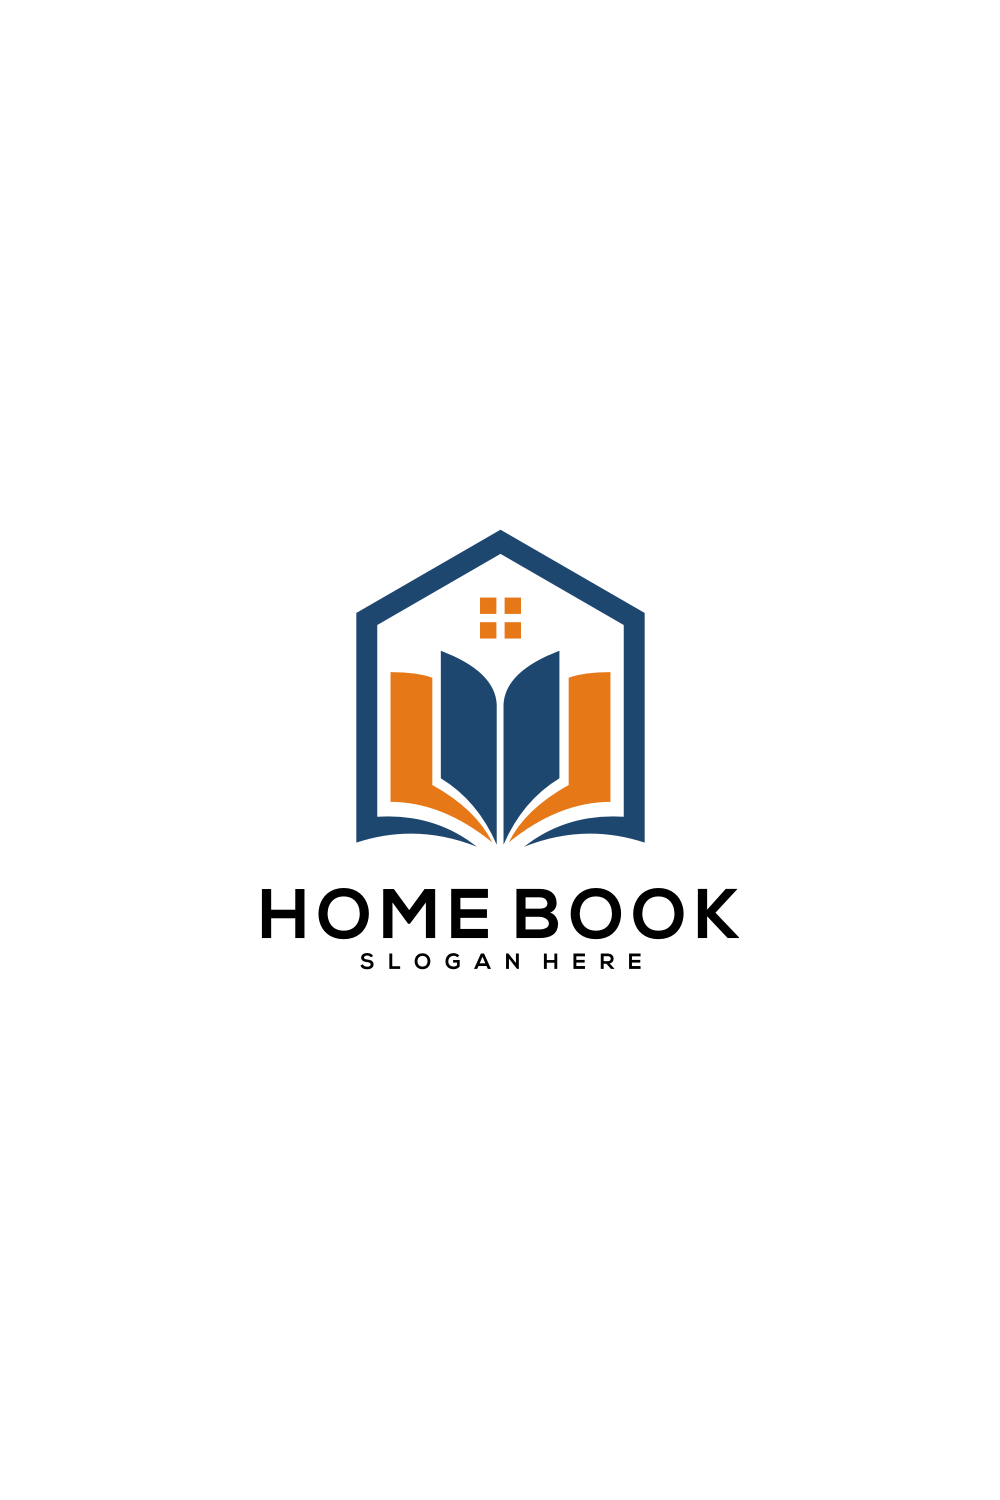 Home Book Logo Vector Design Pintertest preview.